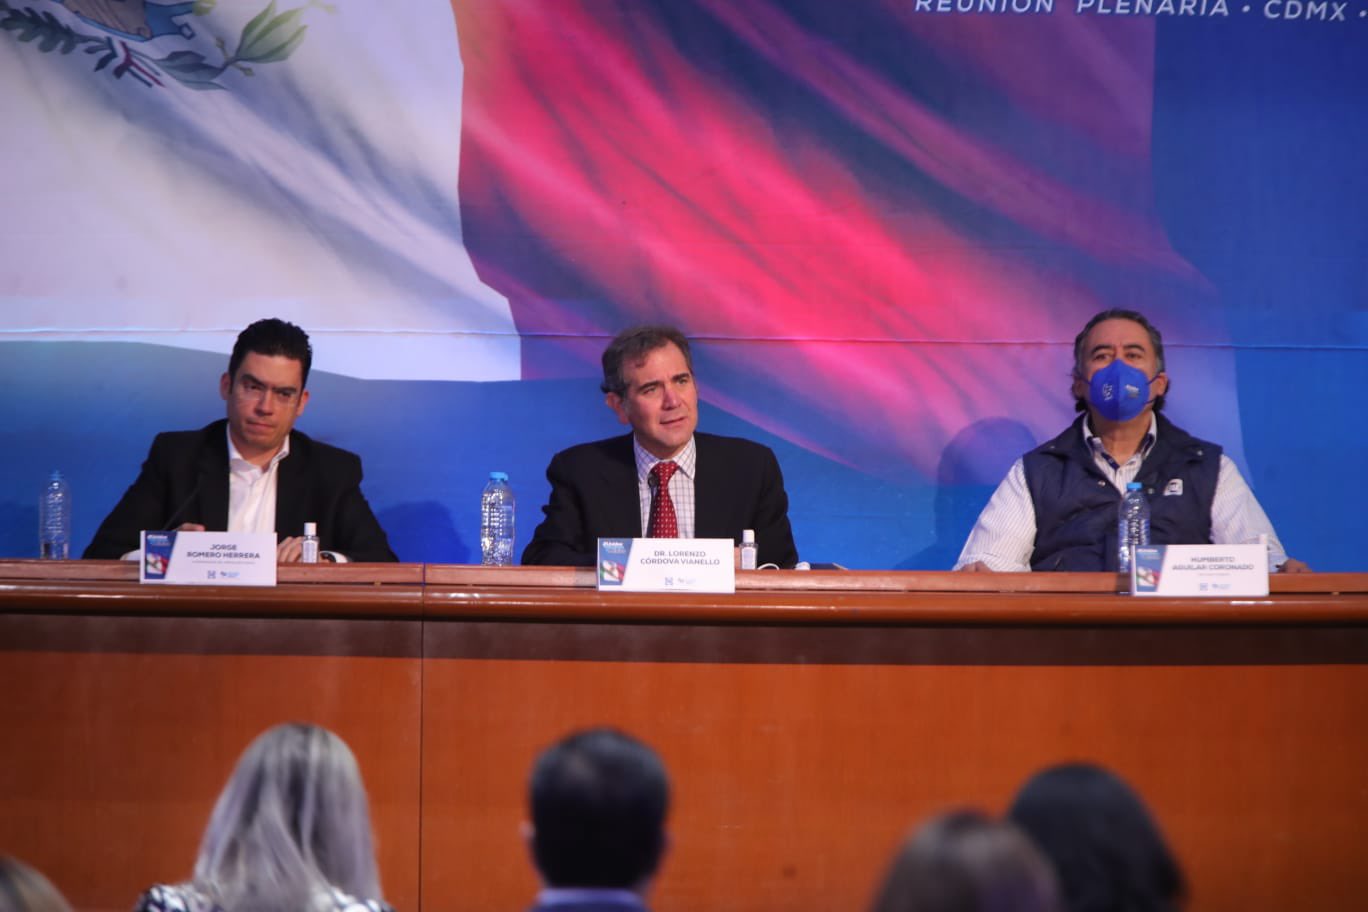 Lorenzo Córdova participó en  la reunión plenaria del PAN en la Cámara de Diputados, lo que fue duramente criticado por AMLO. (Foto: Twitter/@lorenzocordovav)